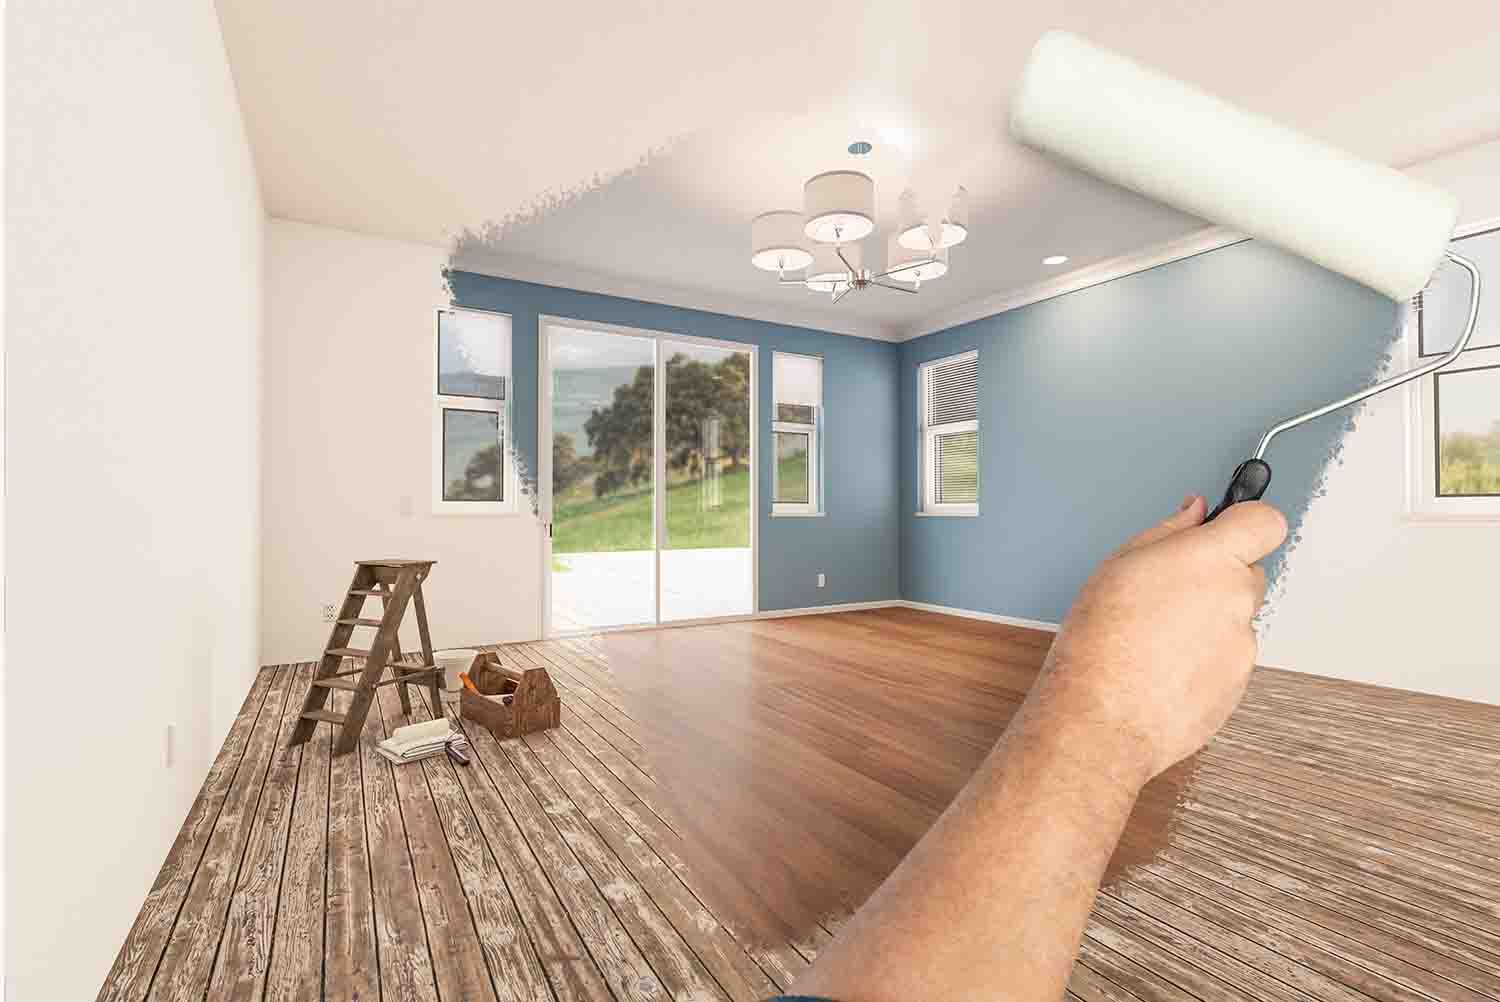 Montage photo d'une personne qui passe un rouleau de peinture qui transforme la maison